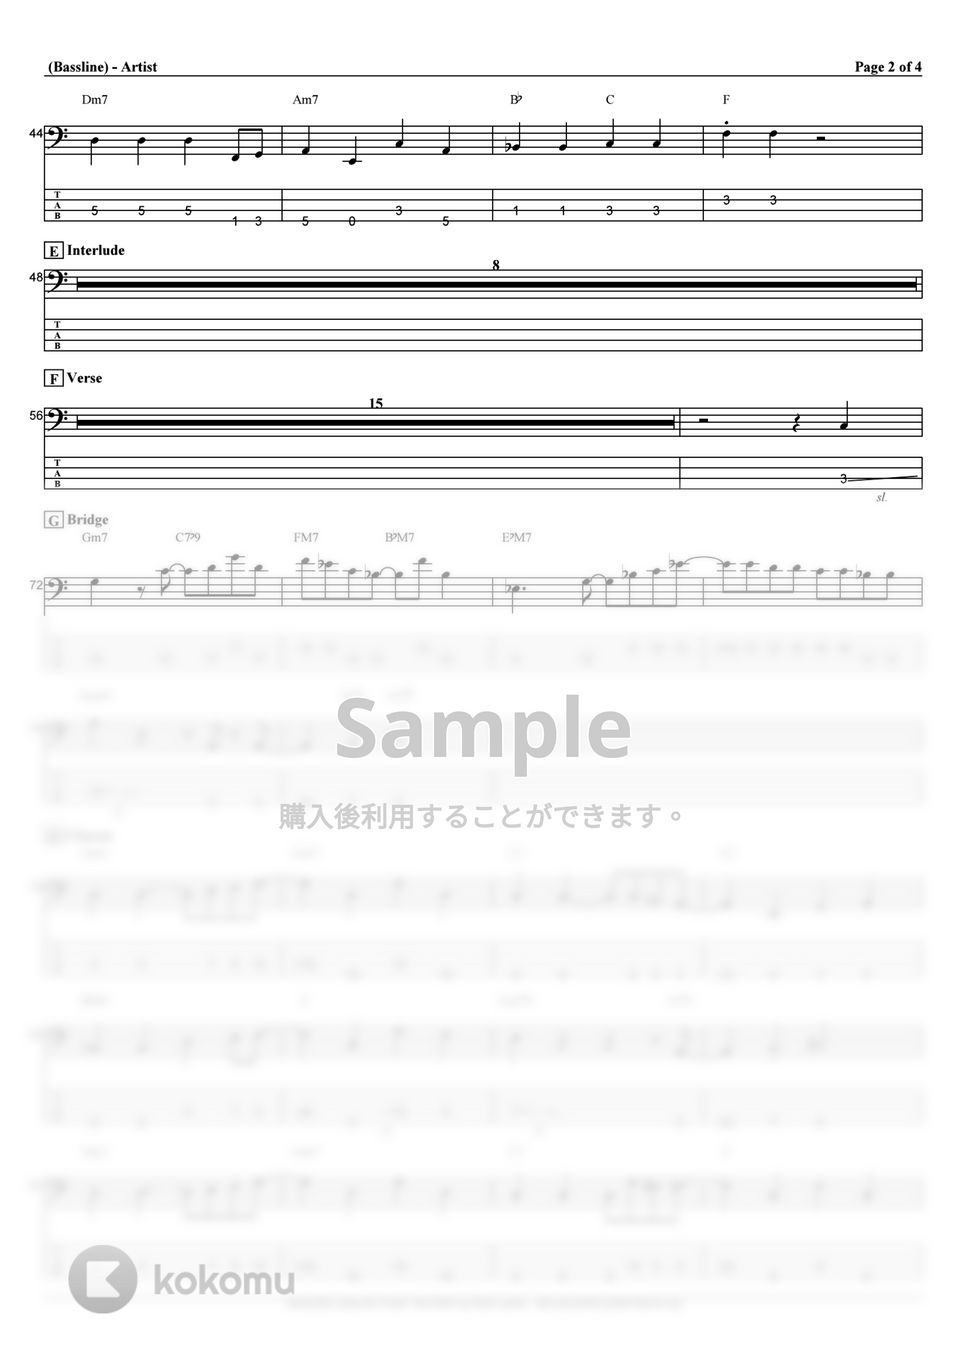 ヨルシカ - 強盗と花束 (ベース Tab譜 4弦) by T's bass score